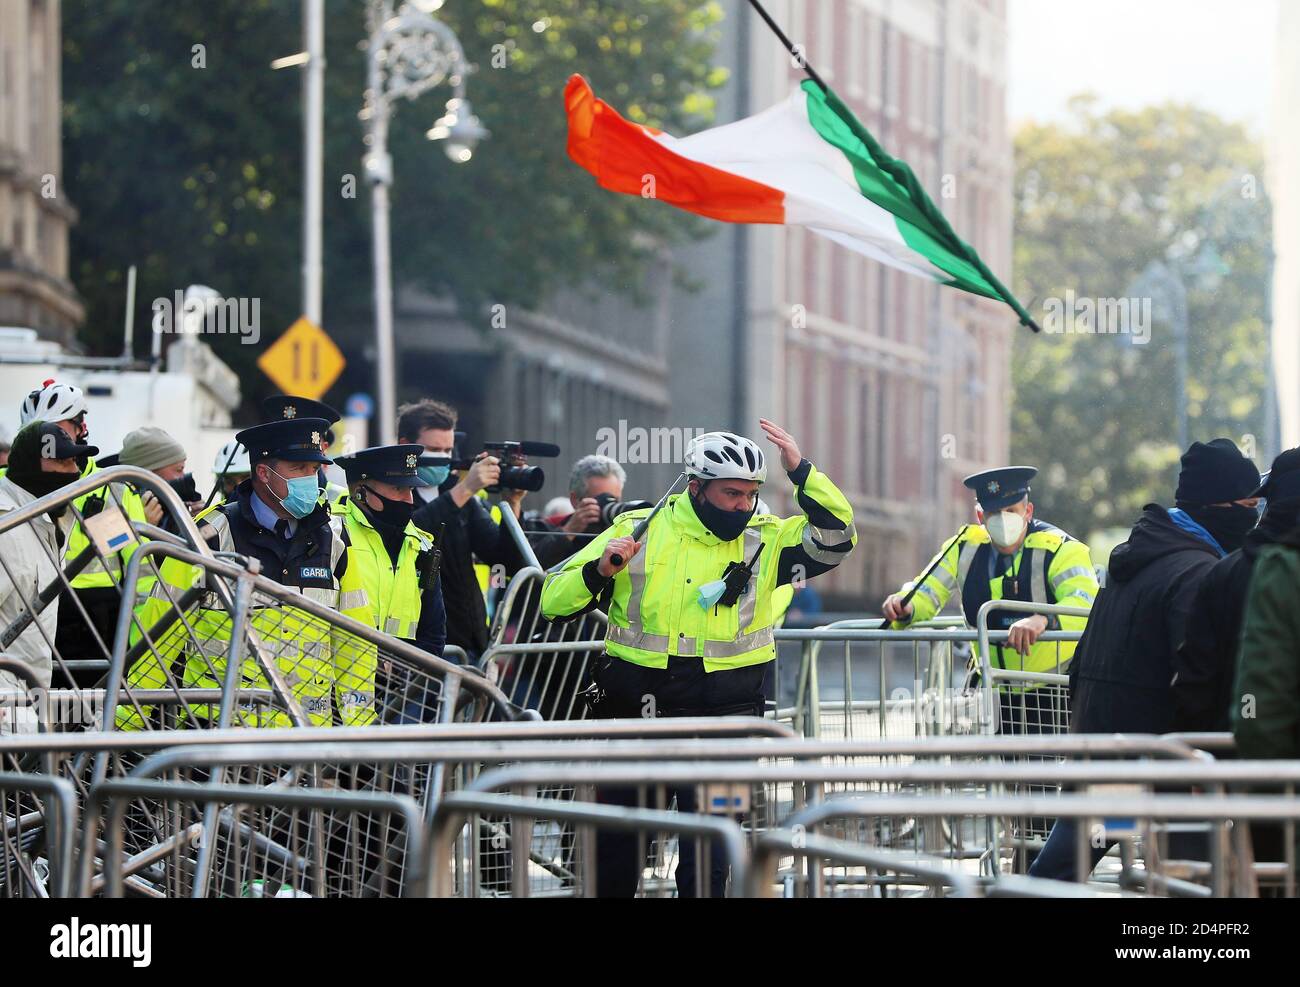 Eine irische Trikolore wird durch die Luft geworfen, während Mitglieder eines Garda eingreifen, während Anti-Lockdown-Demonstranten mit Gegendemonstranten während eines Anti-Lockdown-Protests vor dem Leinster House in Dublin zusammenprallten, da Irland weiterhin auf einer landesweiten Stufe-3-Coronavirus-Sperre ist. Stockfoto